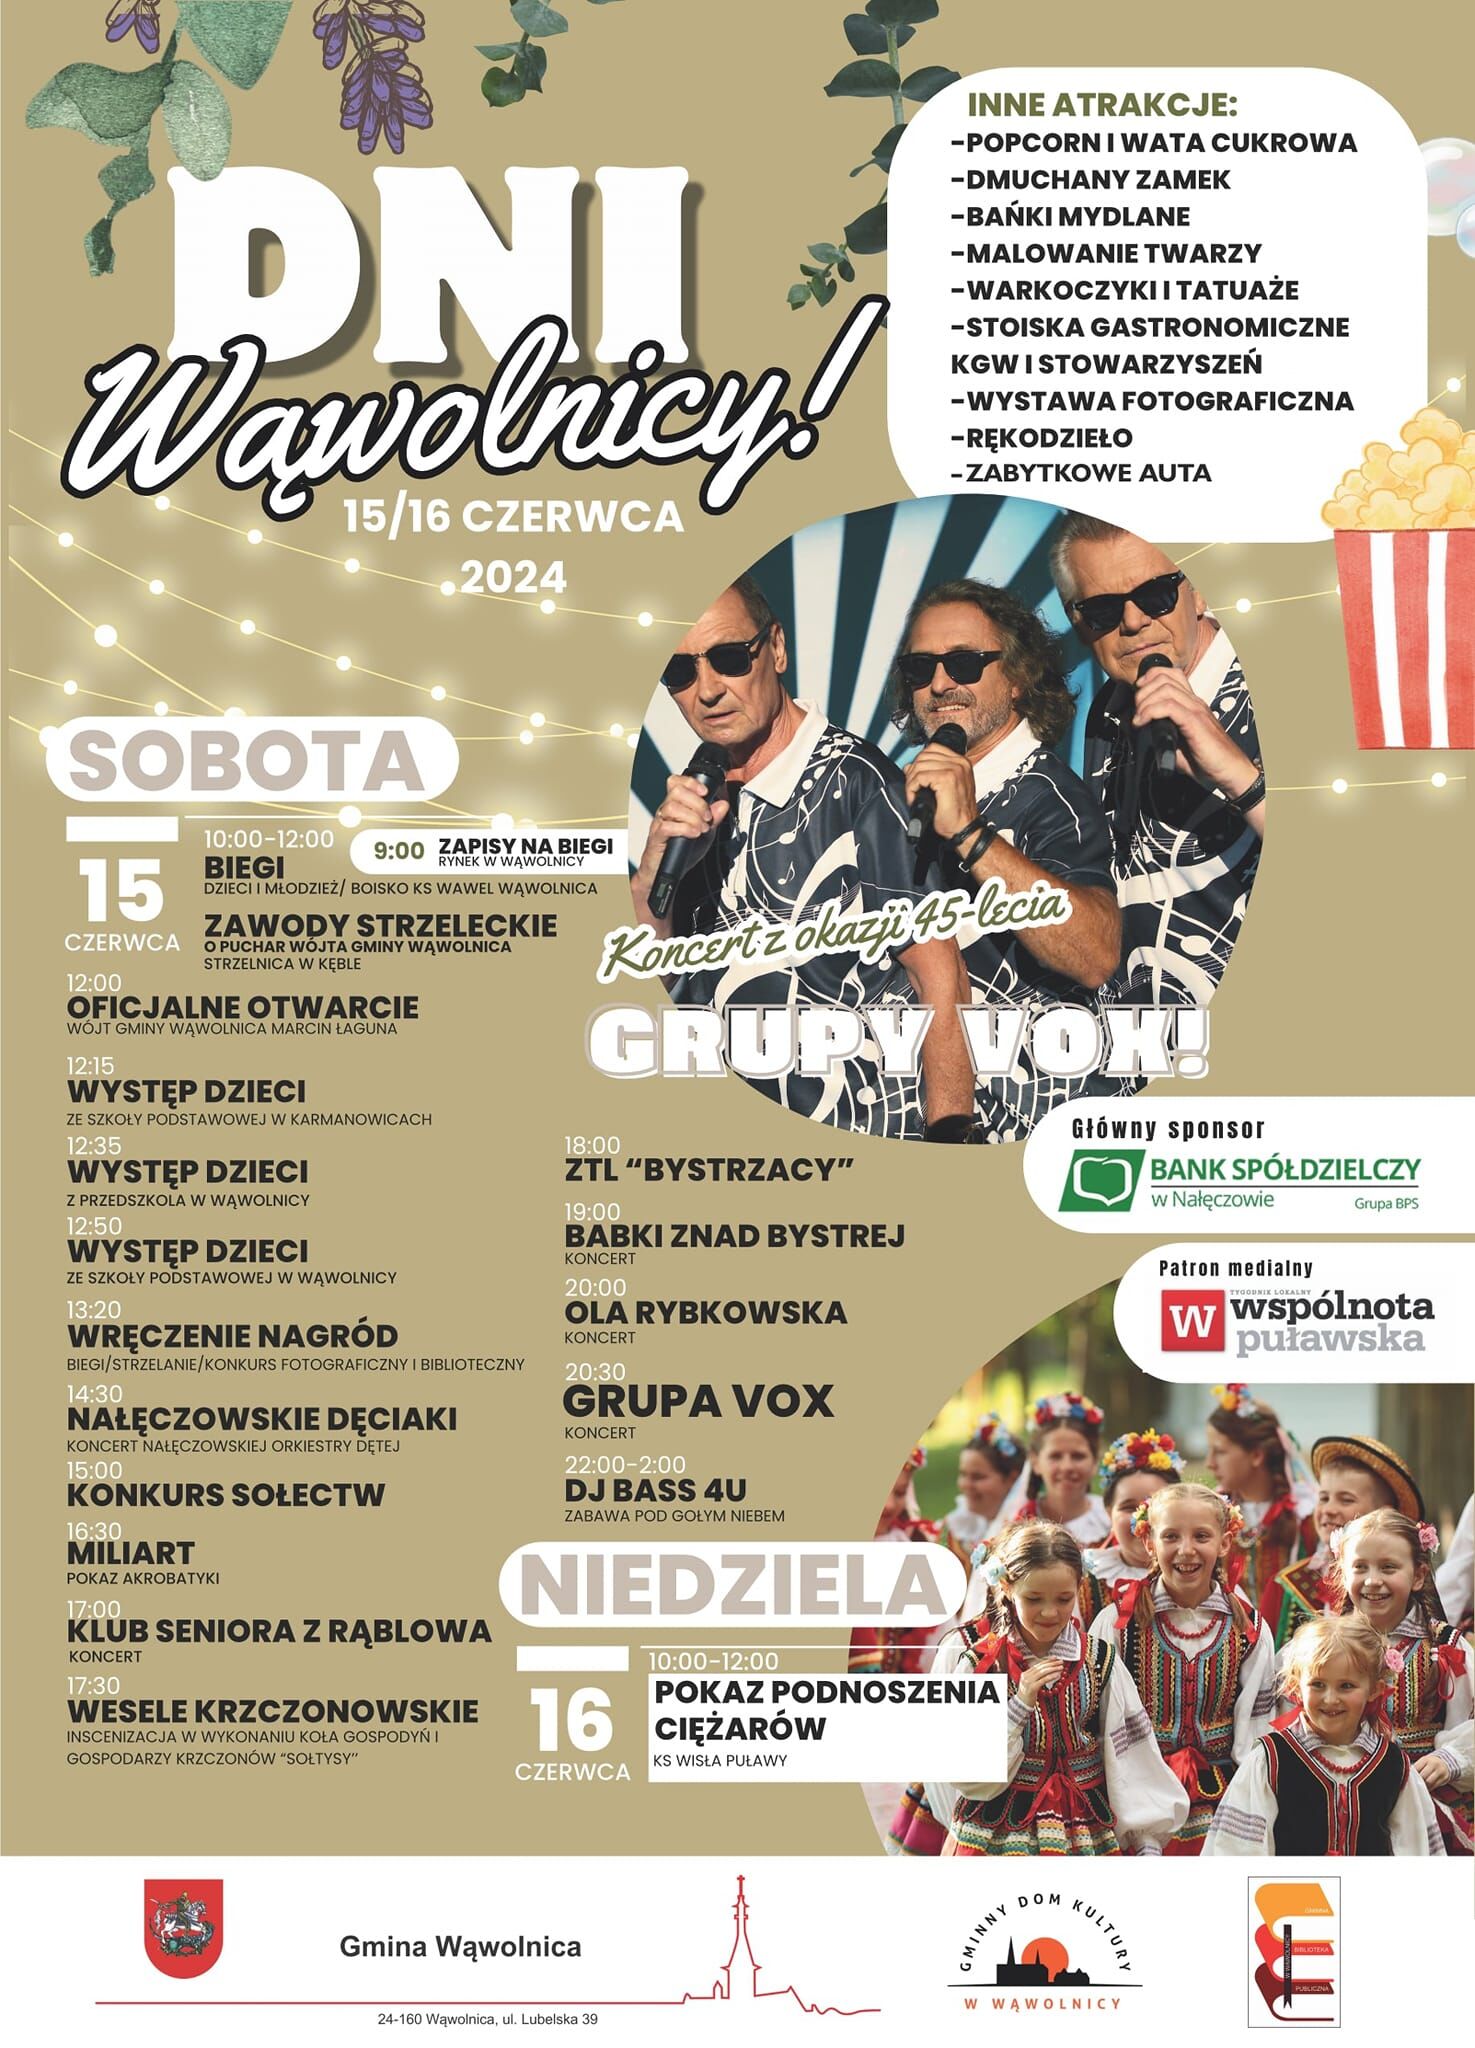 Plakat zapowiadający wydarzenie "Dni Wawolnicy" pokazuje daty, grafiki związane z festynem, zdjęcie dwóch muzyków w okularach przeciwsłonecznych i program wydarzeń.